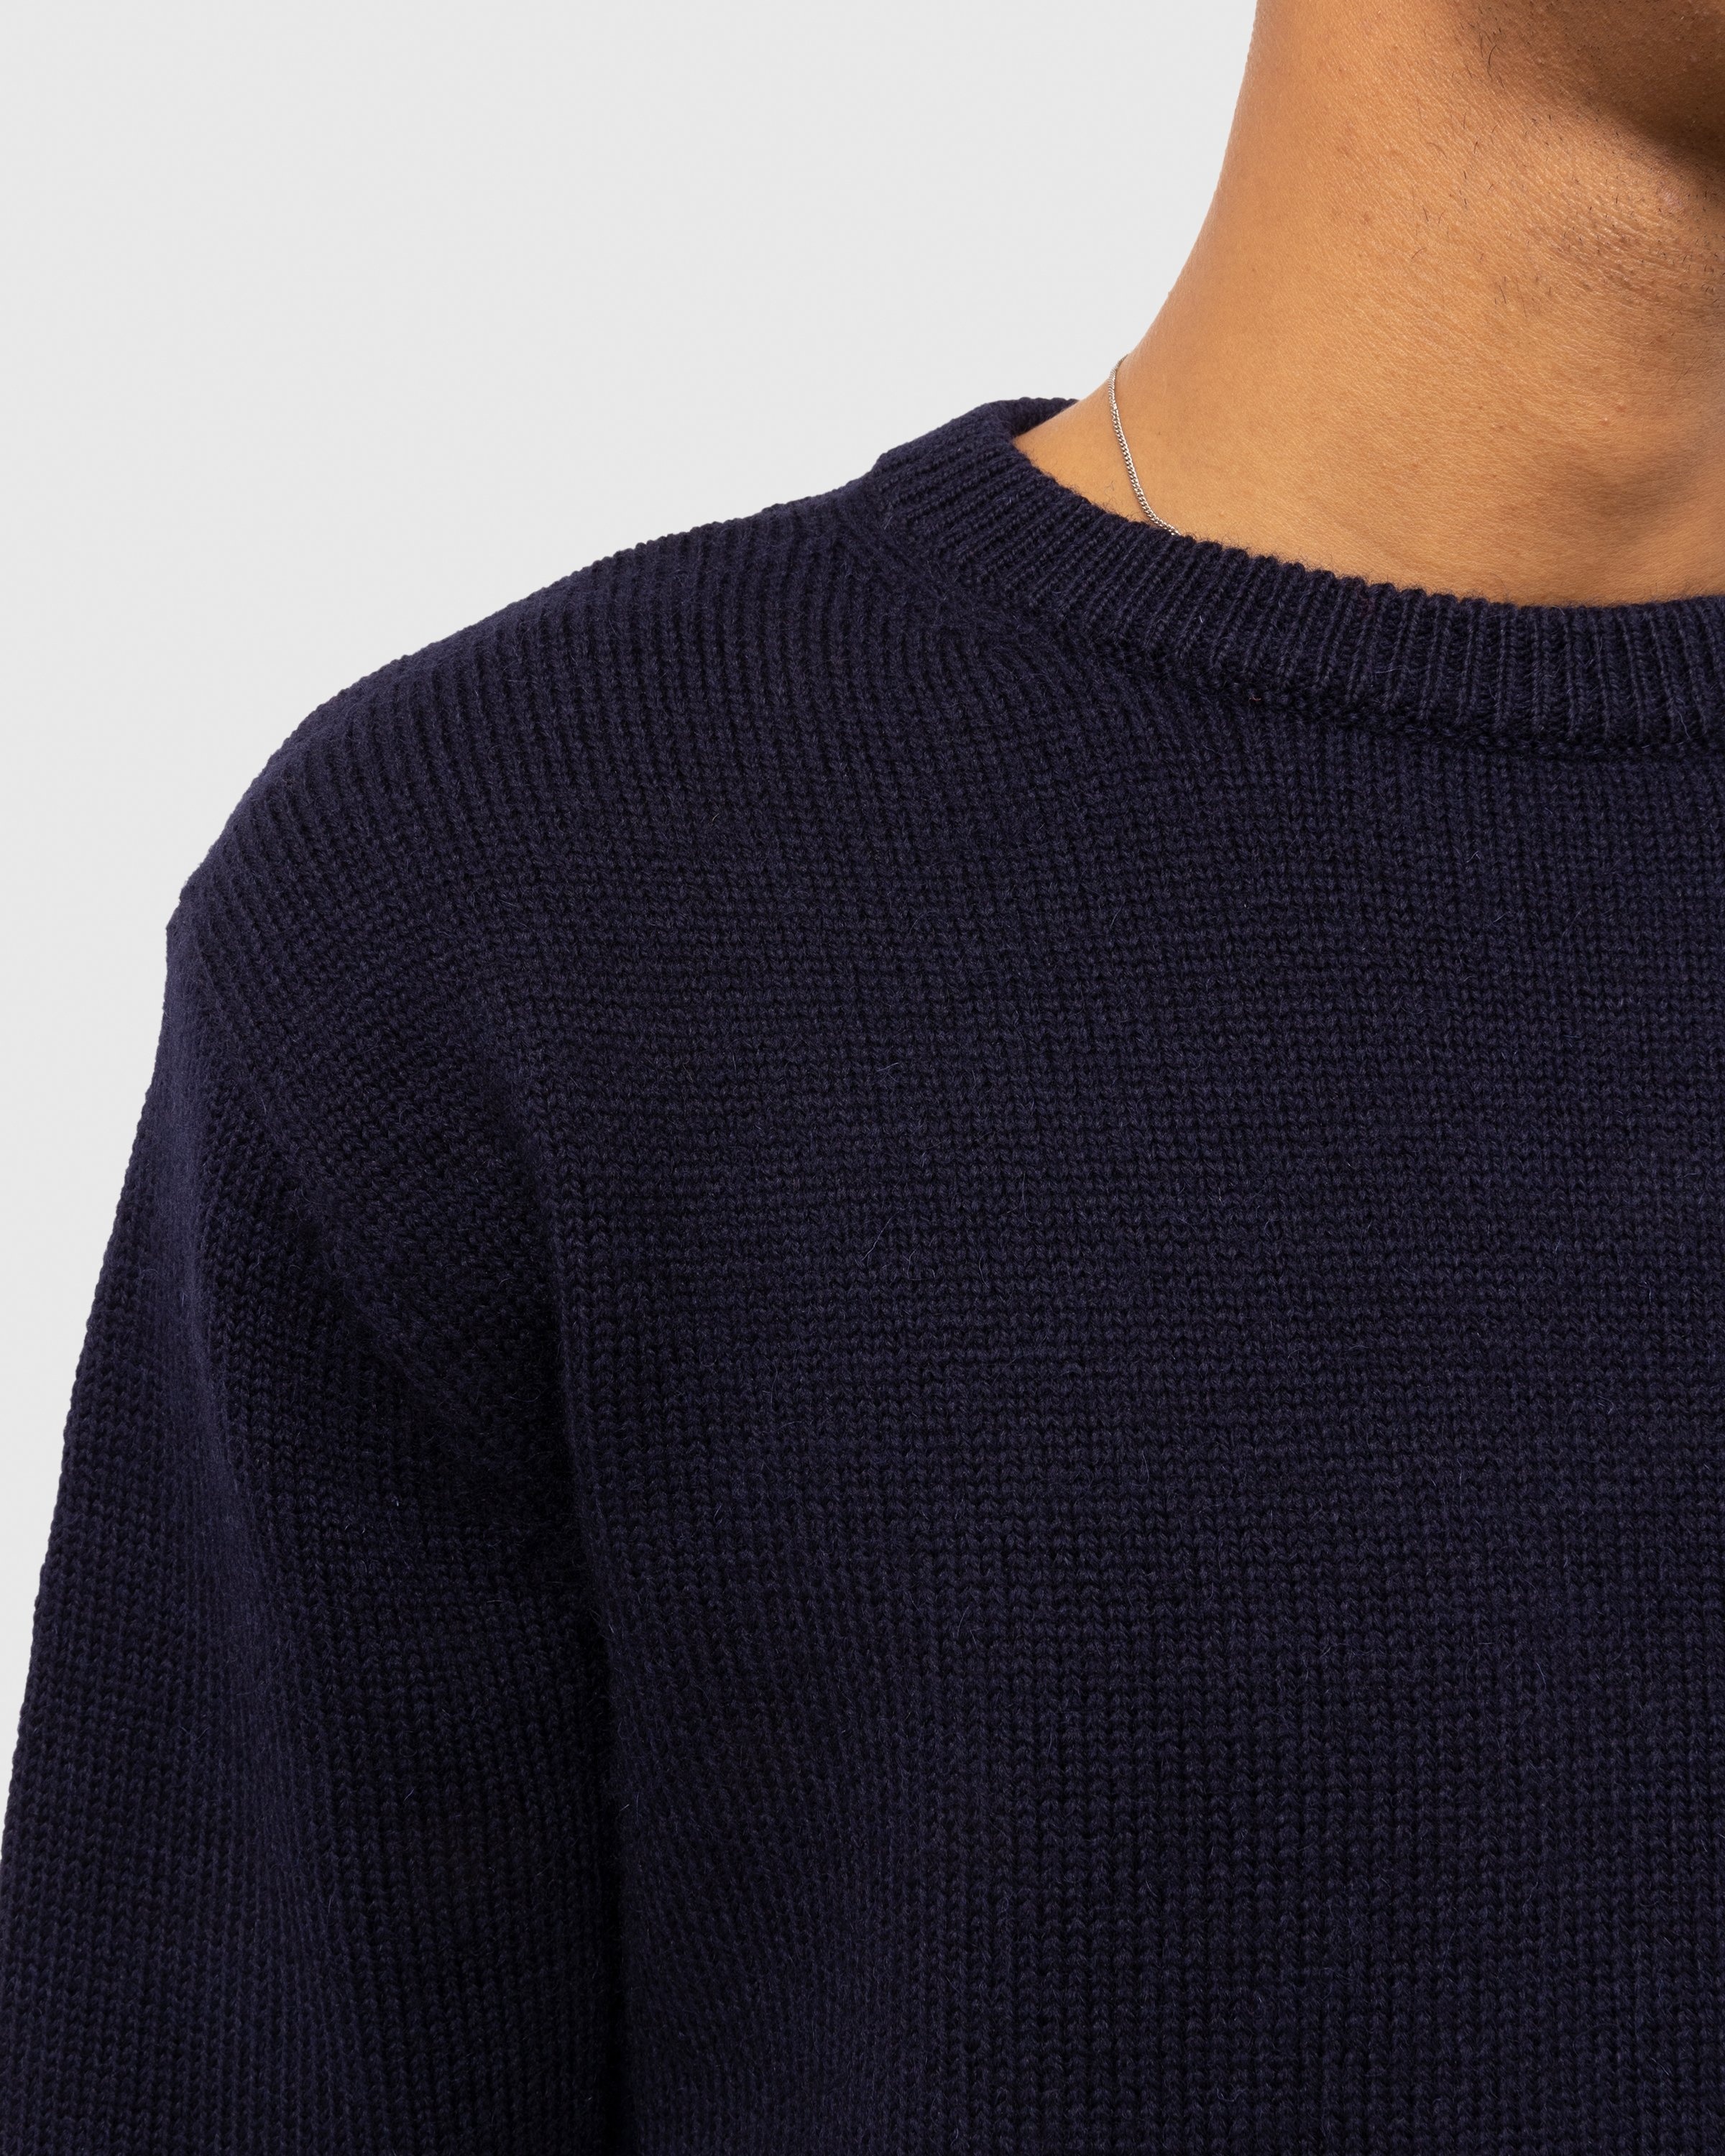 Dries van Noten – Nelson Sweater Blue - Knitwear - Blue - Image 3